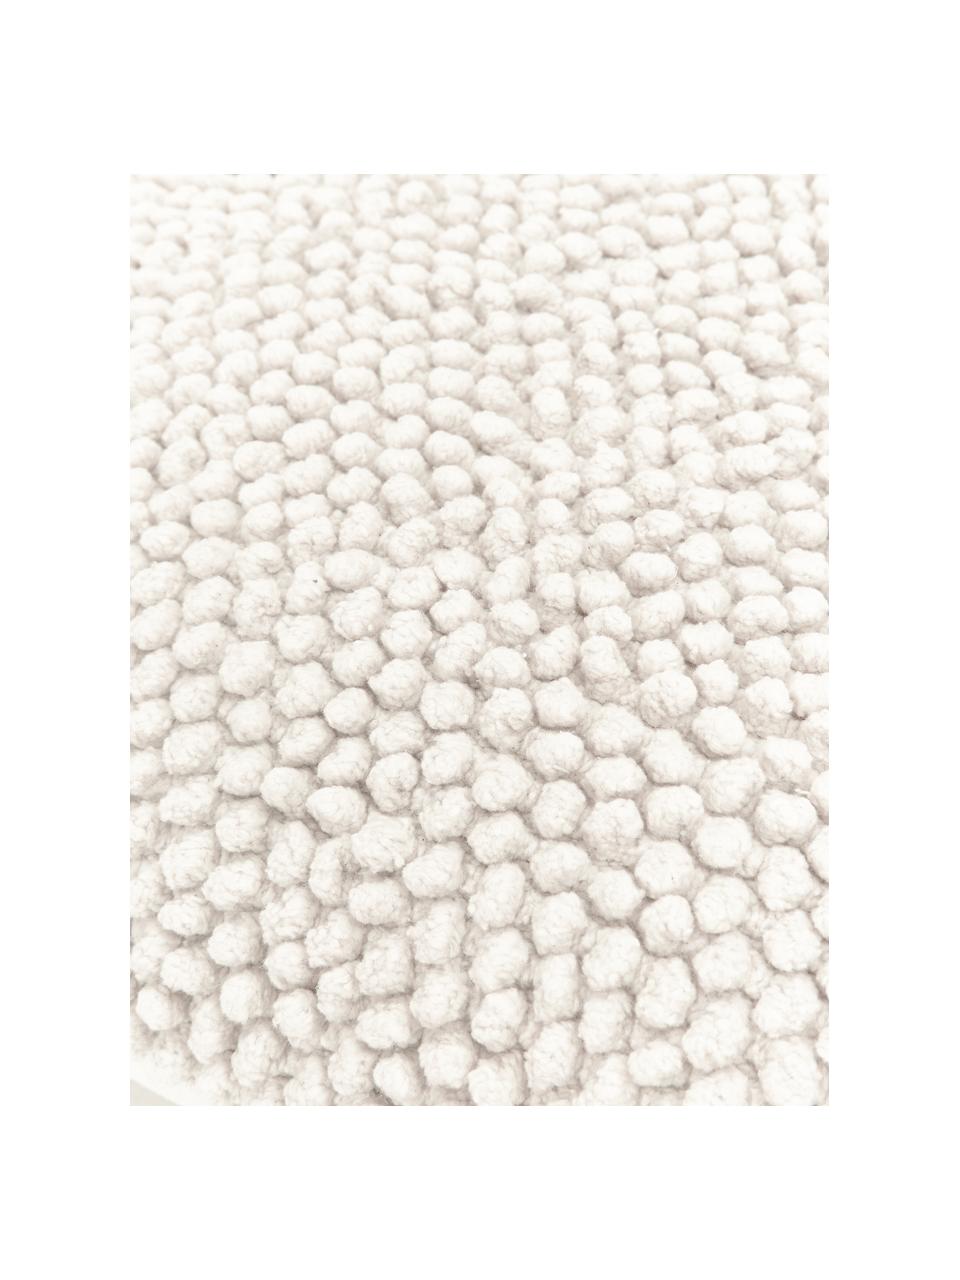 Kussenhoes Indi met gestructureerde oppervlak in crèmewit, 100% katoen, Gebroken wit, 45 x 45 cm